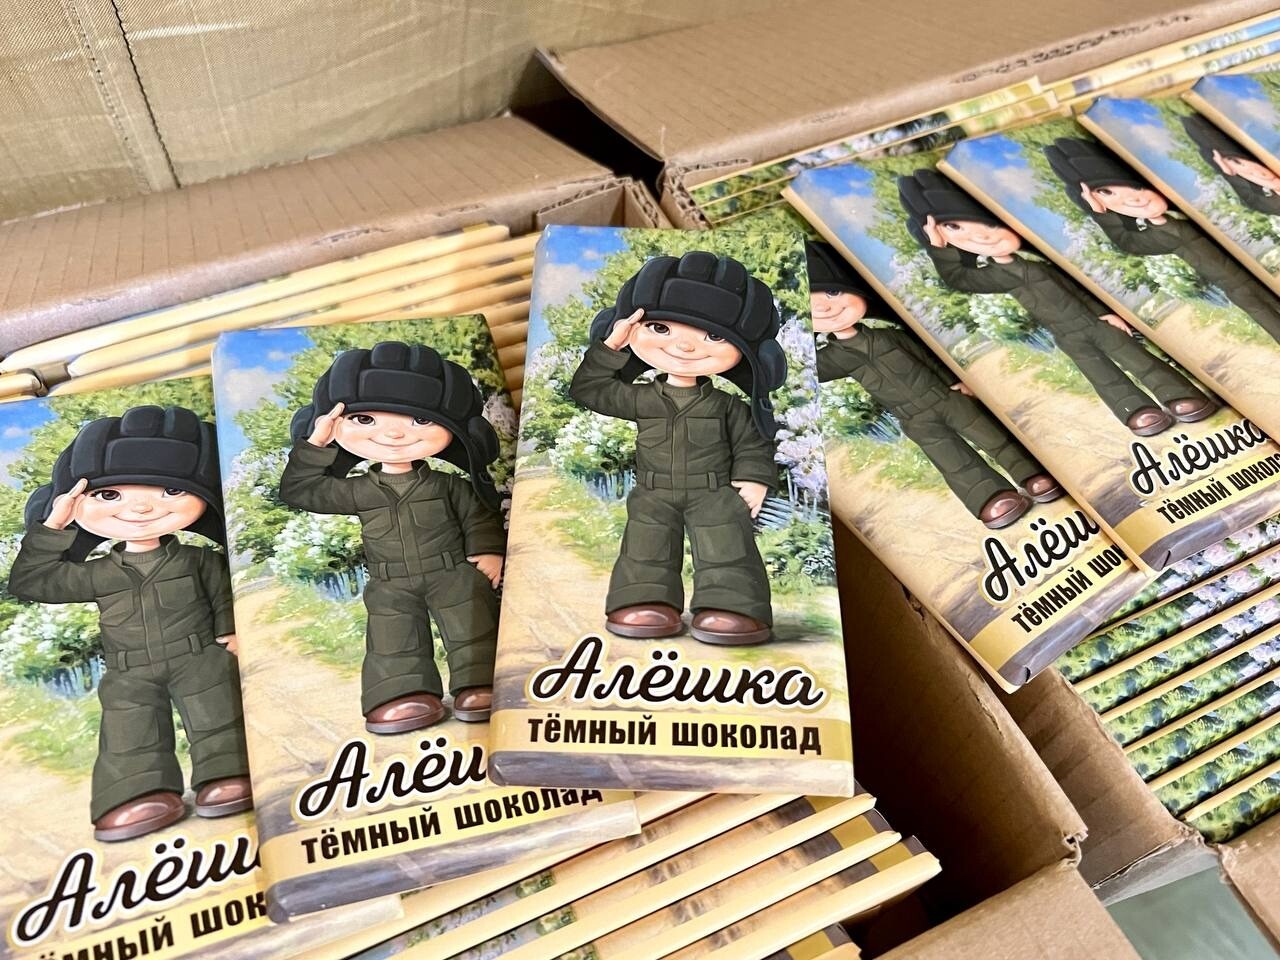 Встречающего военных белгородского мальчика изобразили на шоколадке "Алёшка"